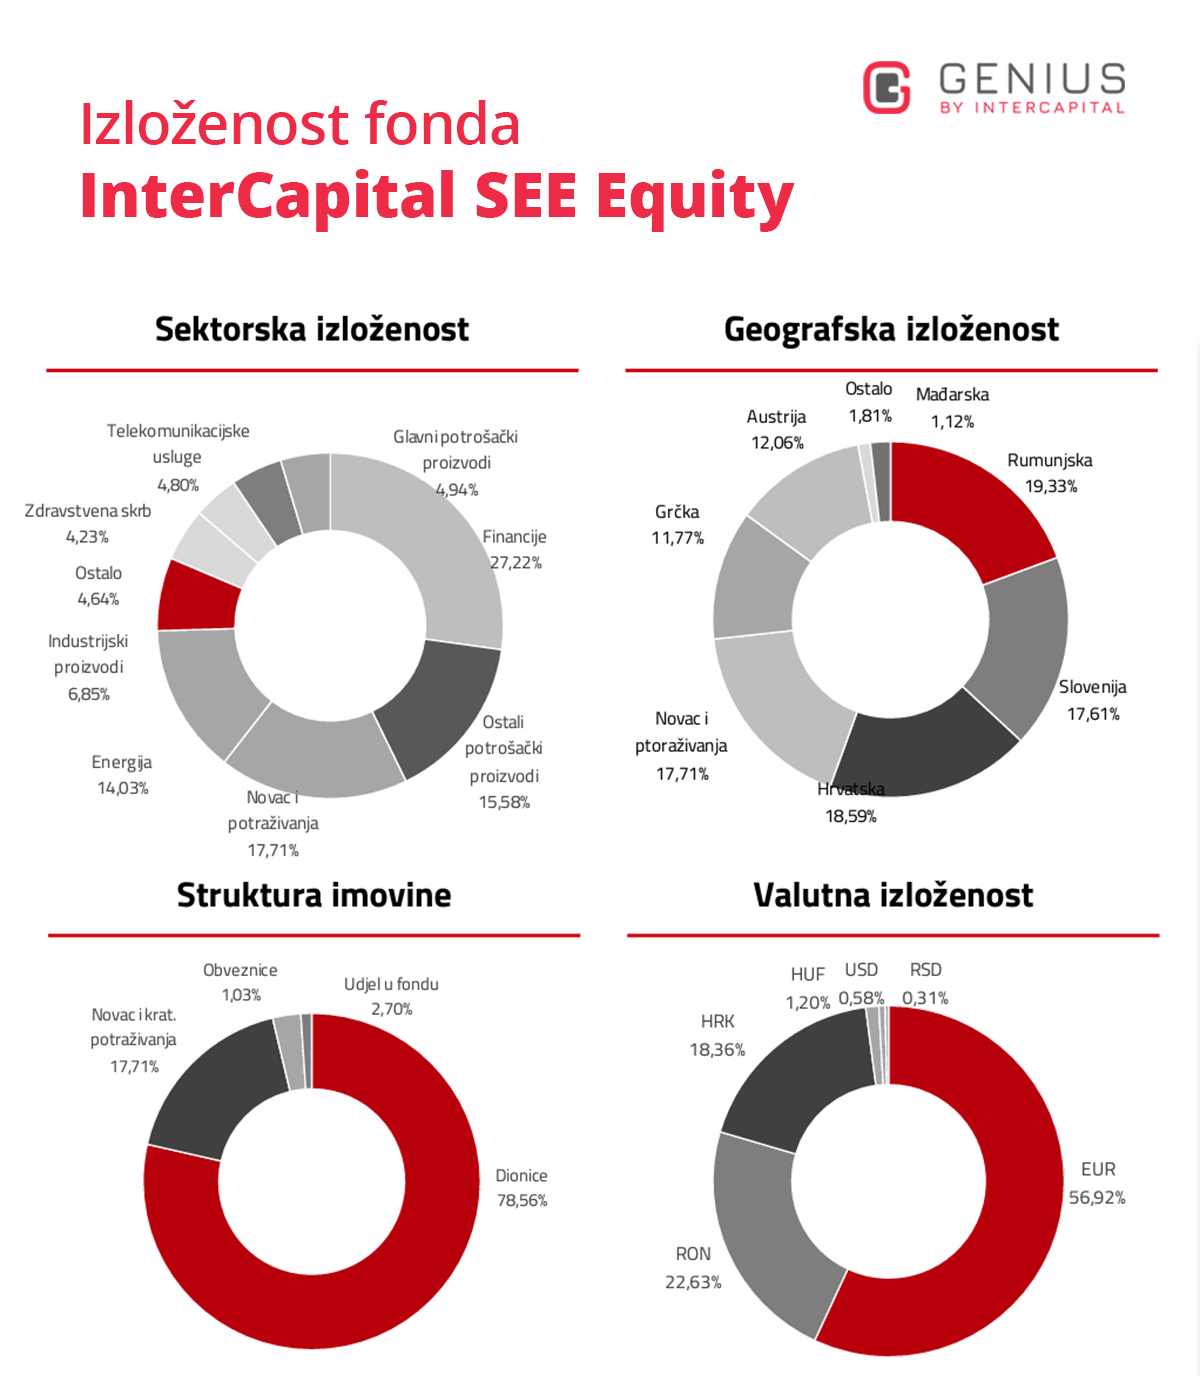 investicijski fondovi - prikaz izloženosti dioničkog fonda Intercapital SEE Equity - sektorska, geografska i valutna izloženosti i struktura imovine